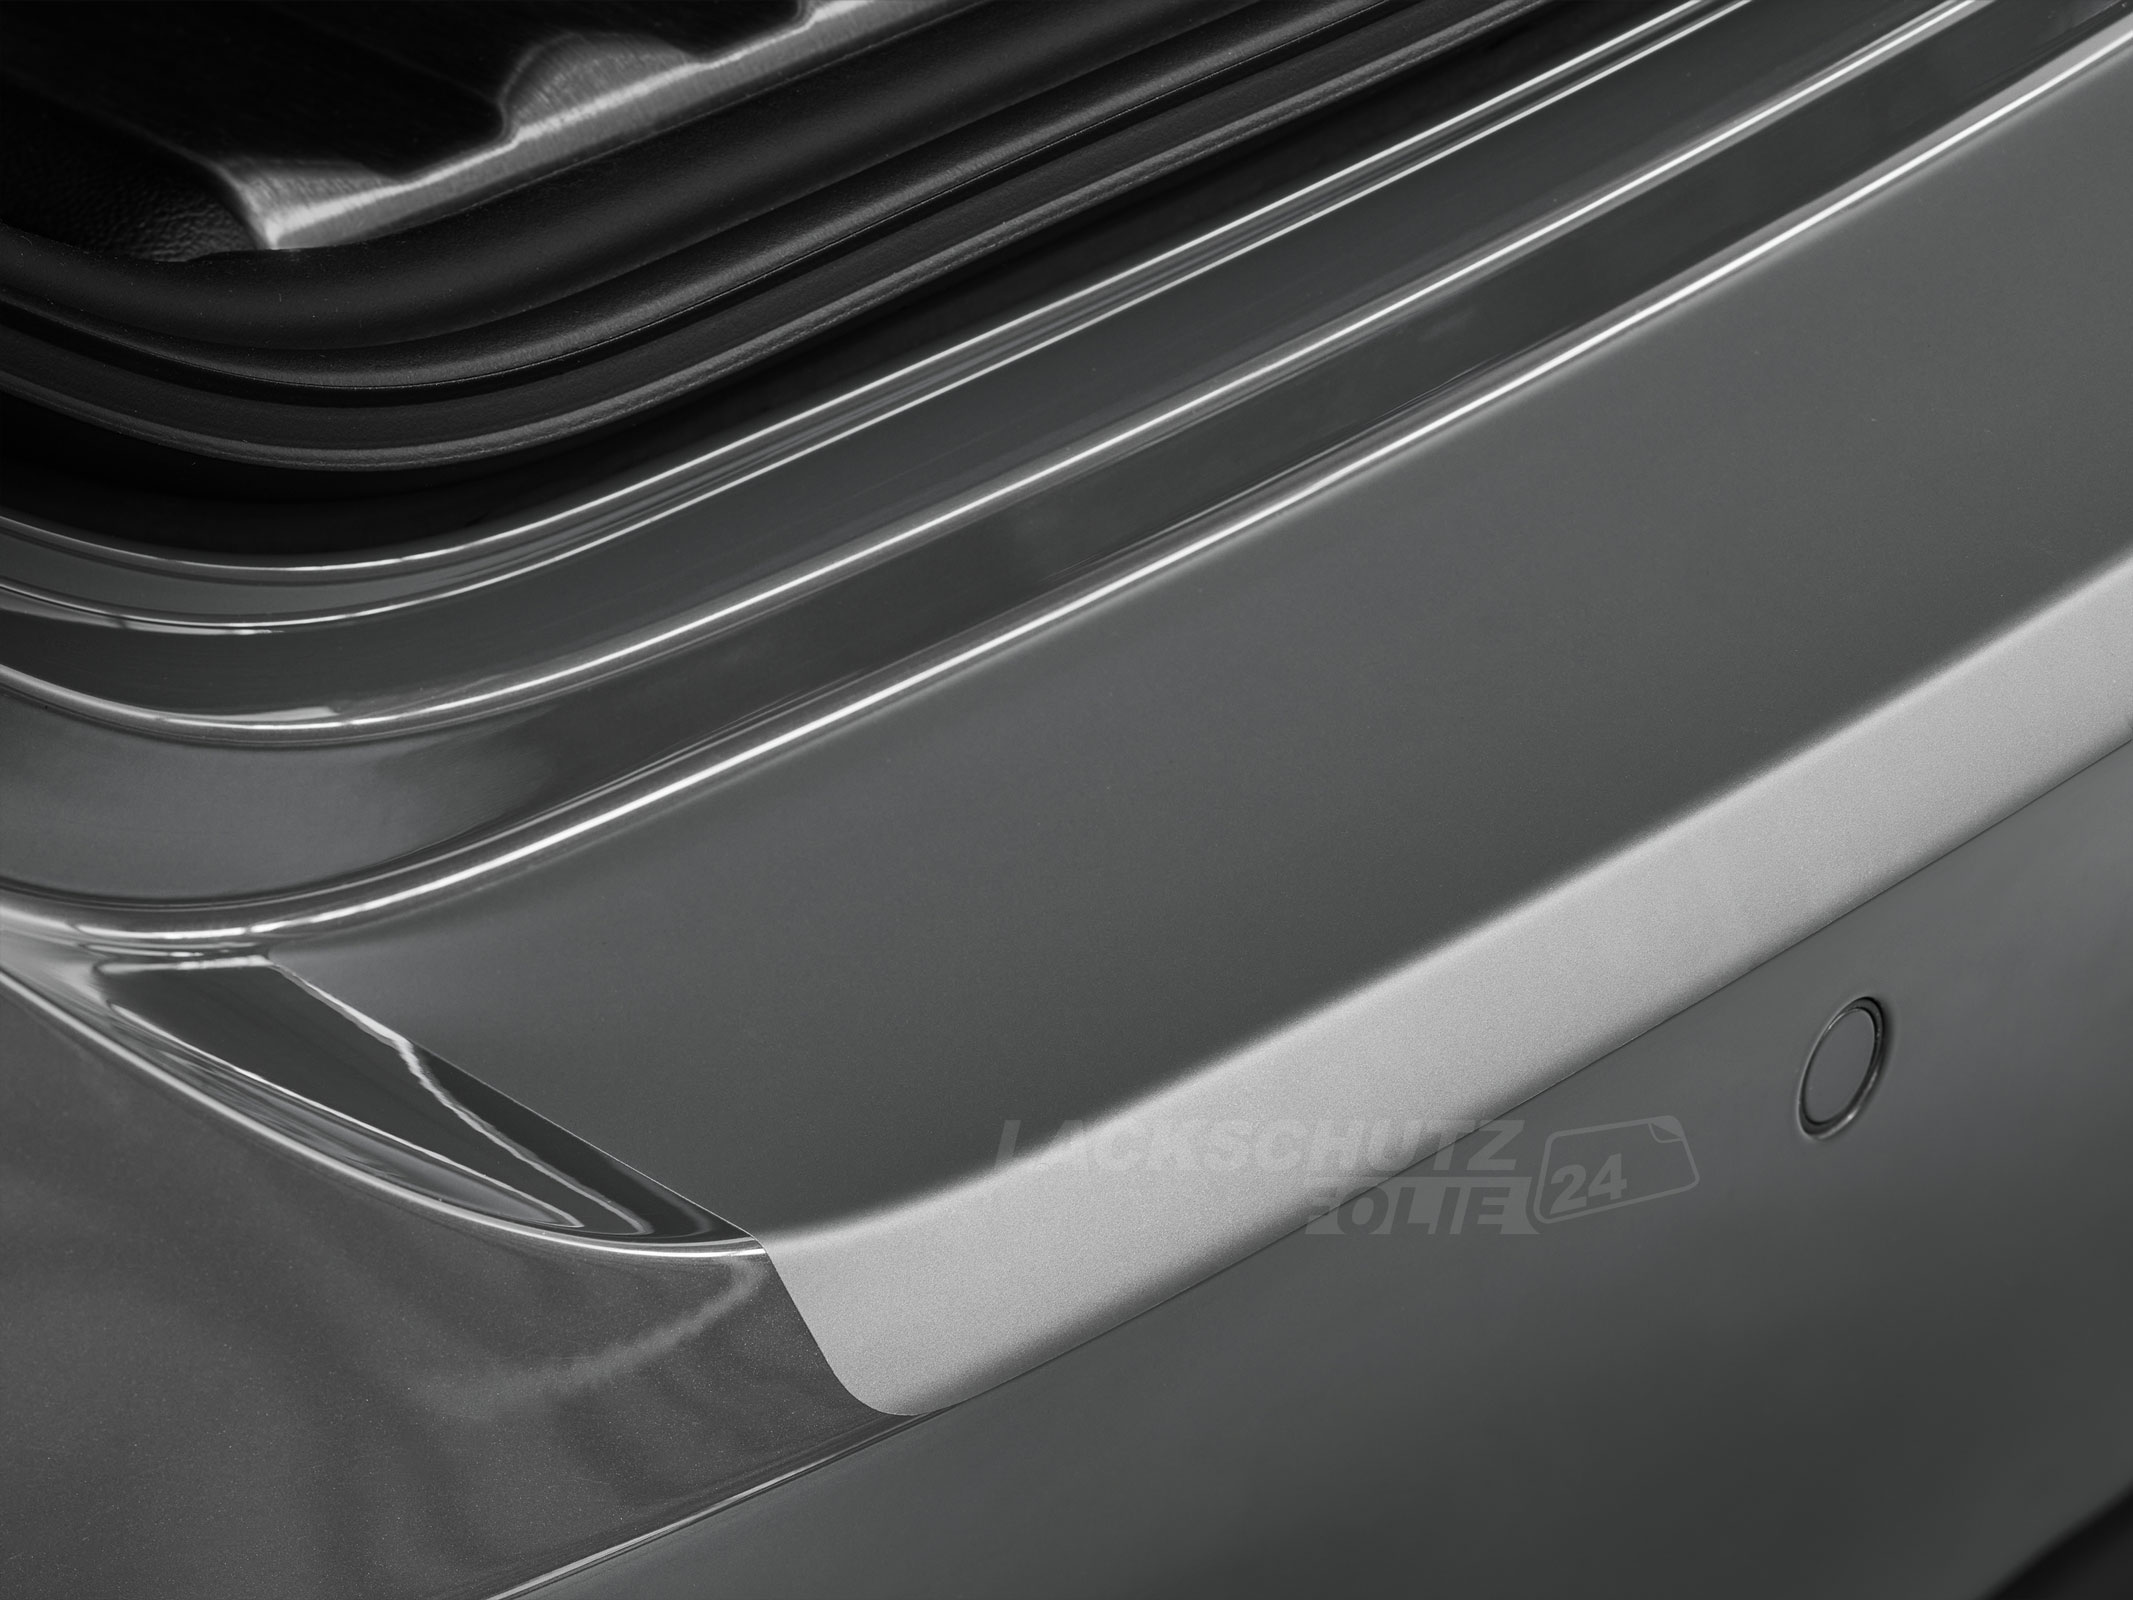 Ladekantenschutzfolie - Transparent Glatt MATT 110 µm stark  für Skoda Octavia Limousine (III) Typ 5E, BJ 05/2013-11/2016